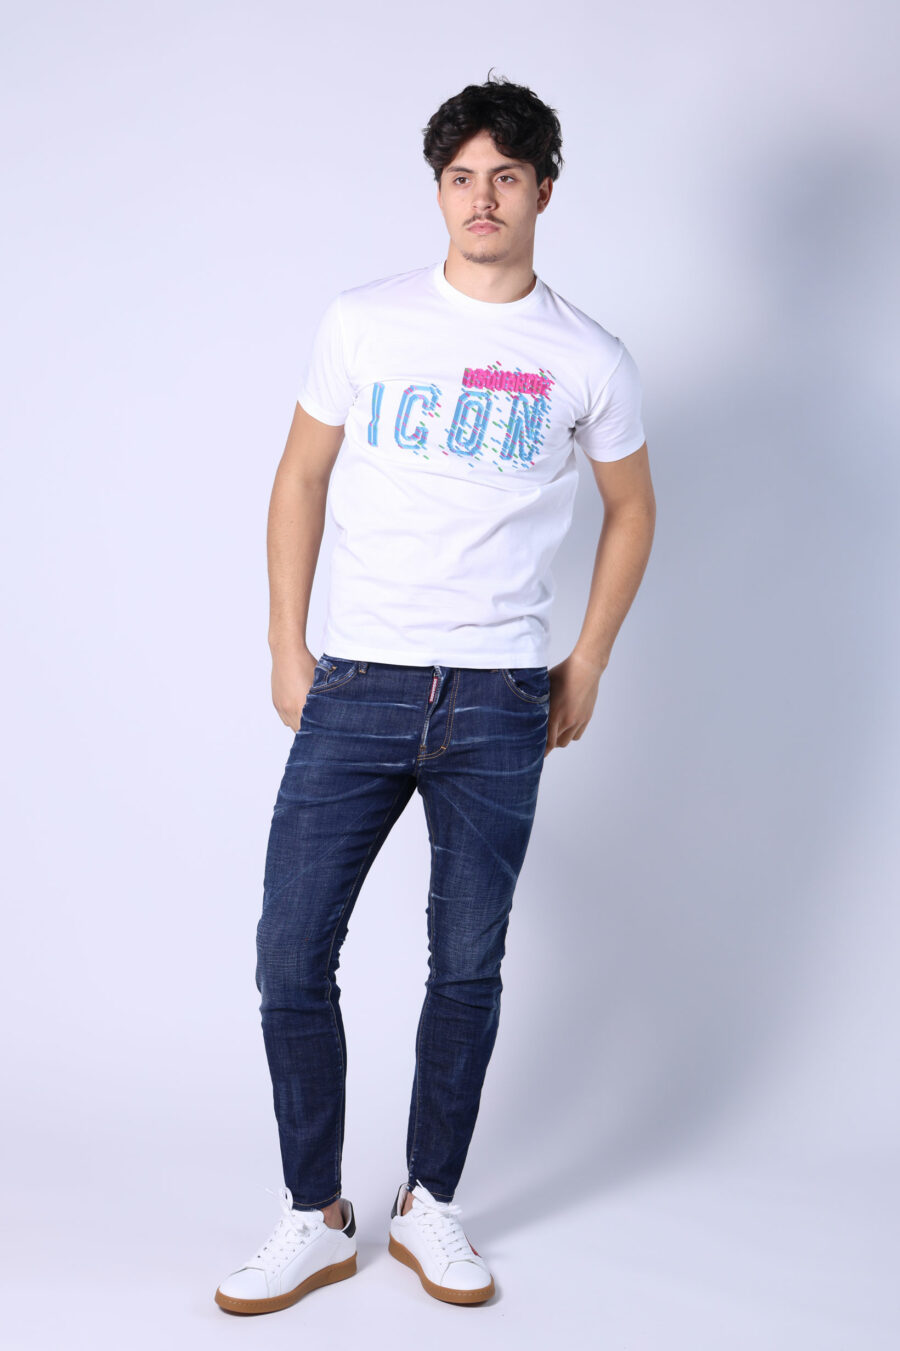 Camiseta blanca con maxilogo "icon pixeled" turquesa y fucsia - Untitled Catalog 05352